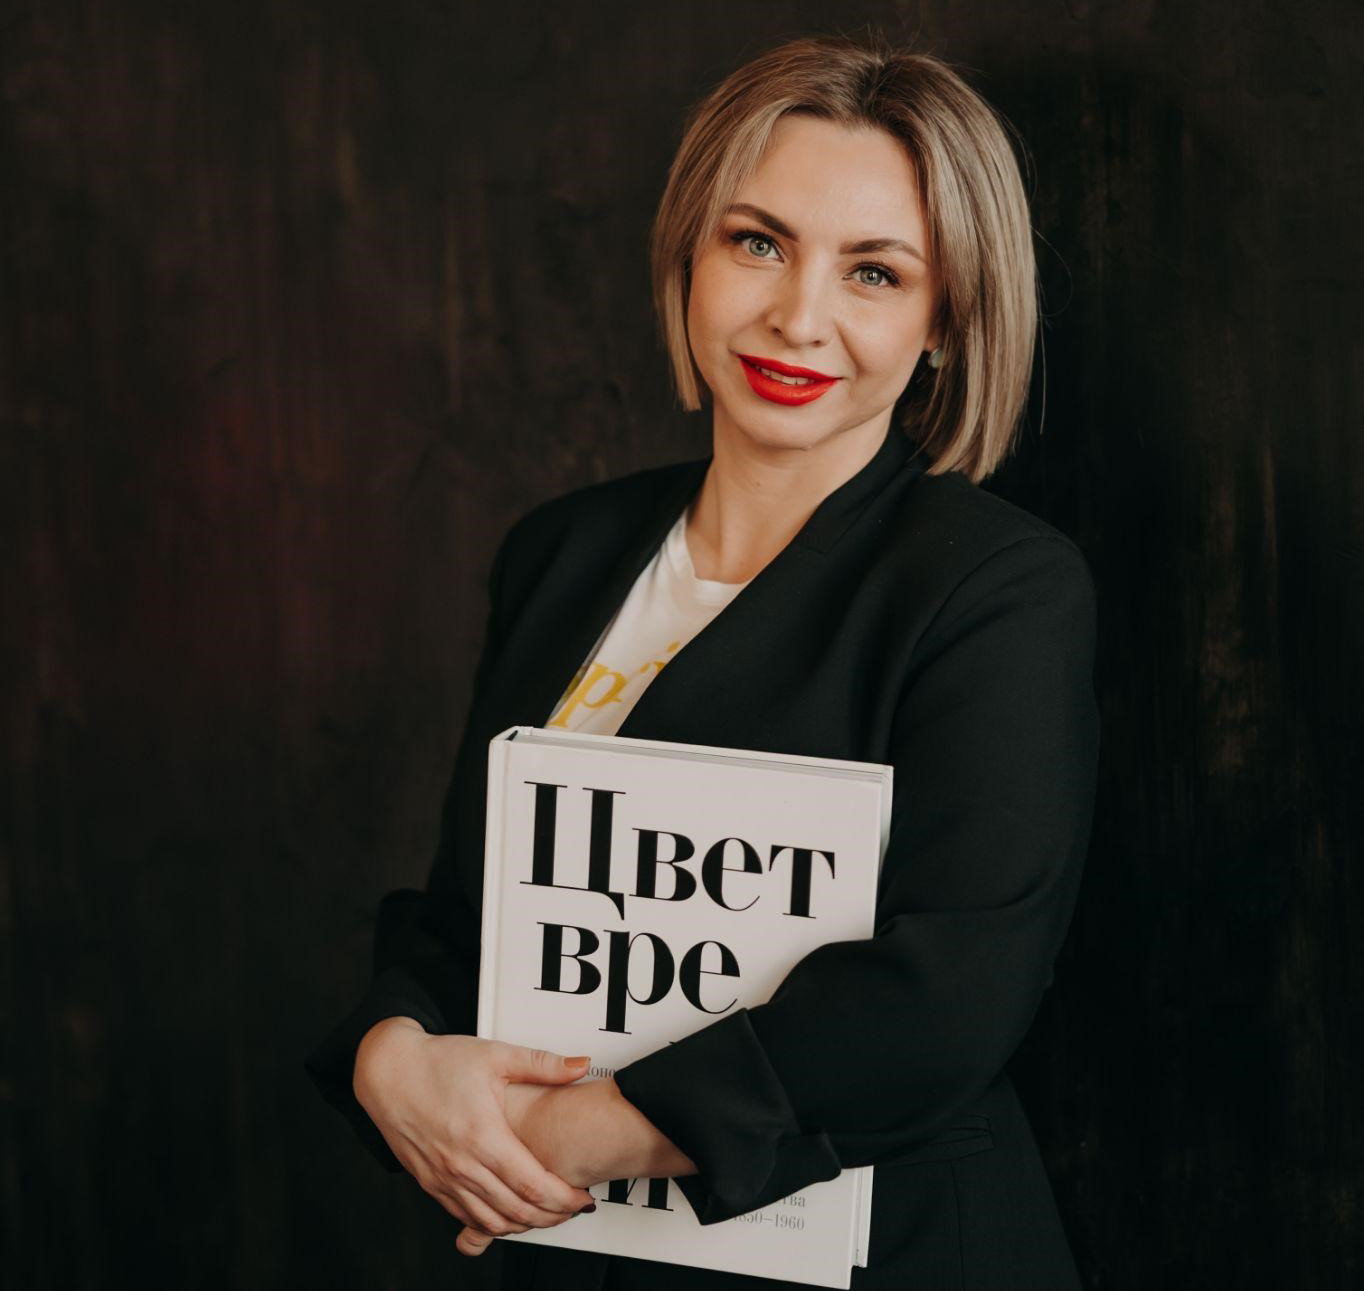 Анастасия Васильева, руководитель отдела найма компании “Этажи”